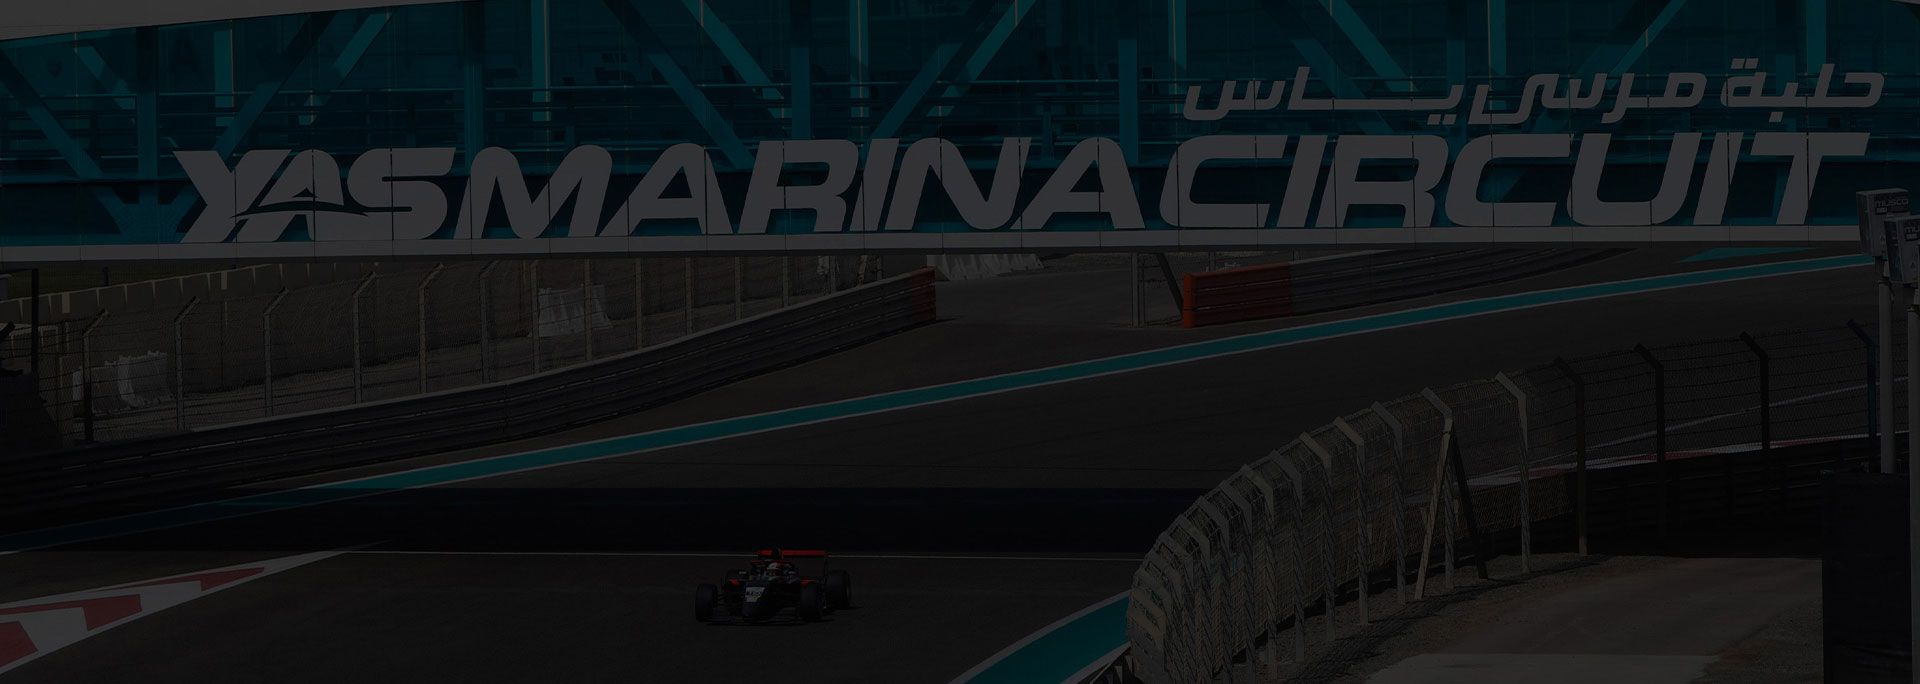 Yas Marina Circuit UAE